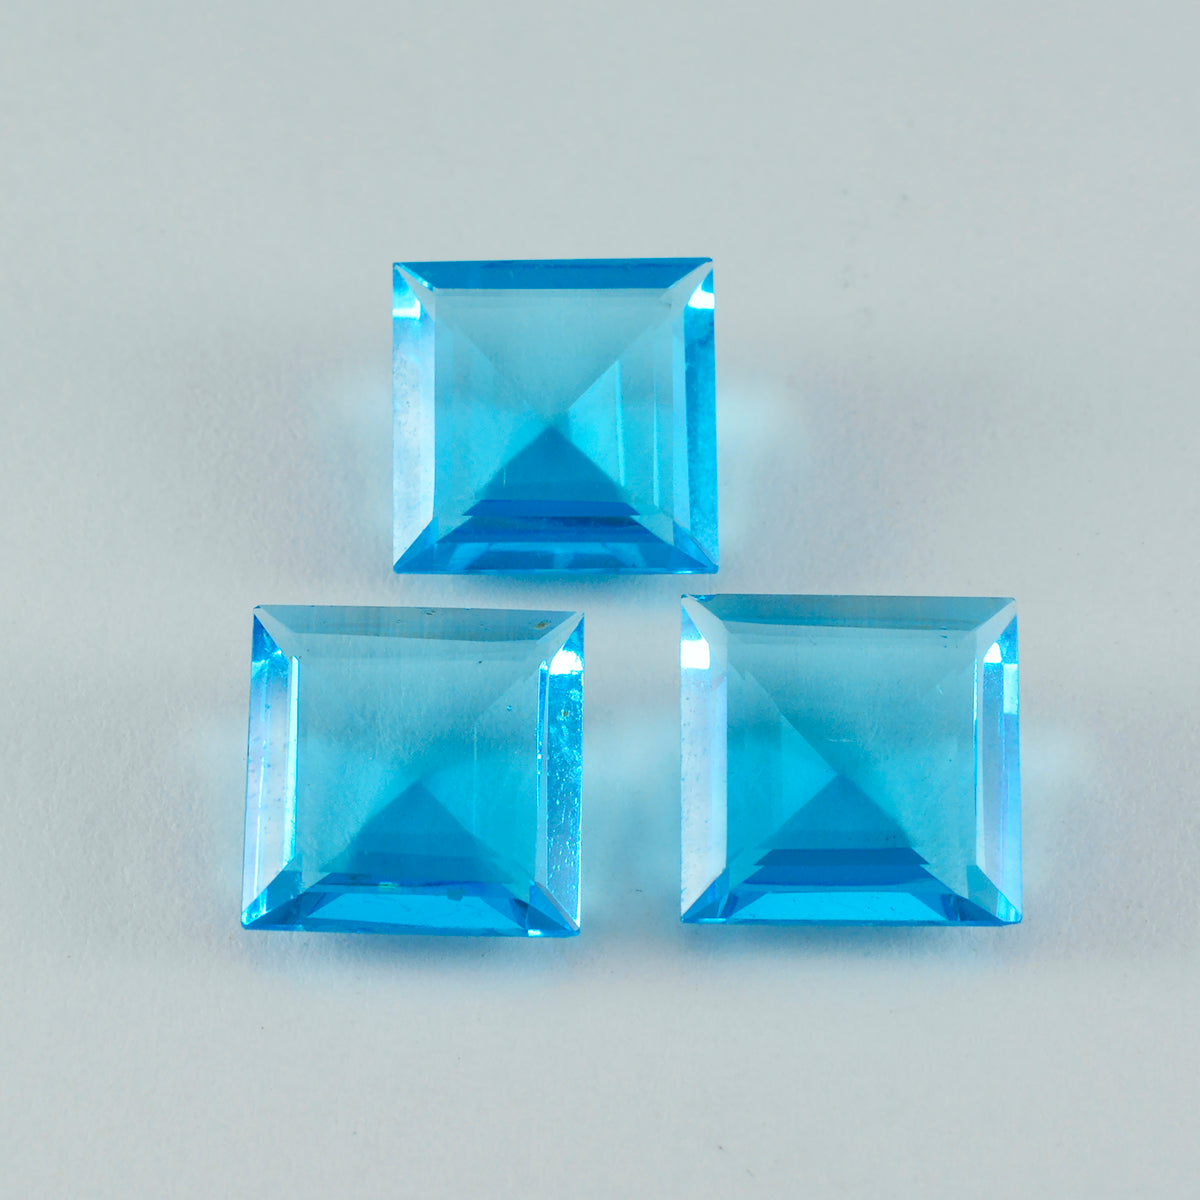 riyogems 1 шт. синий топаз cz ограненный 14x14 мм квадратной формы драгоценные камни прекрасного качества